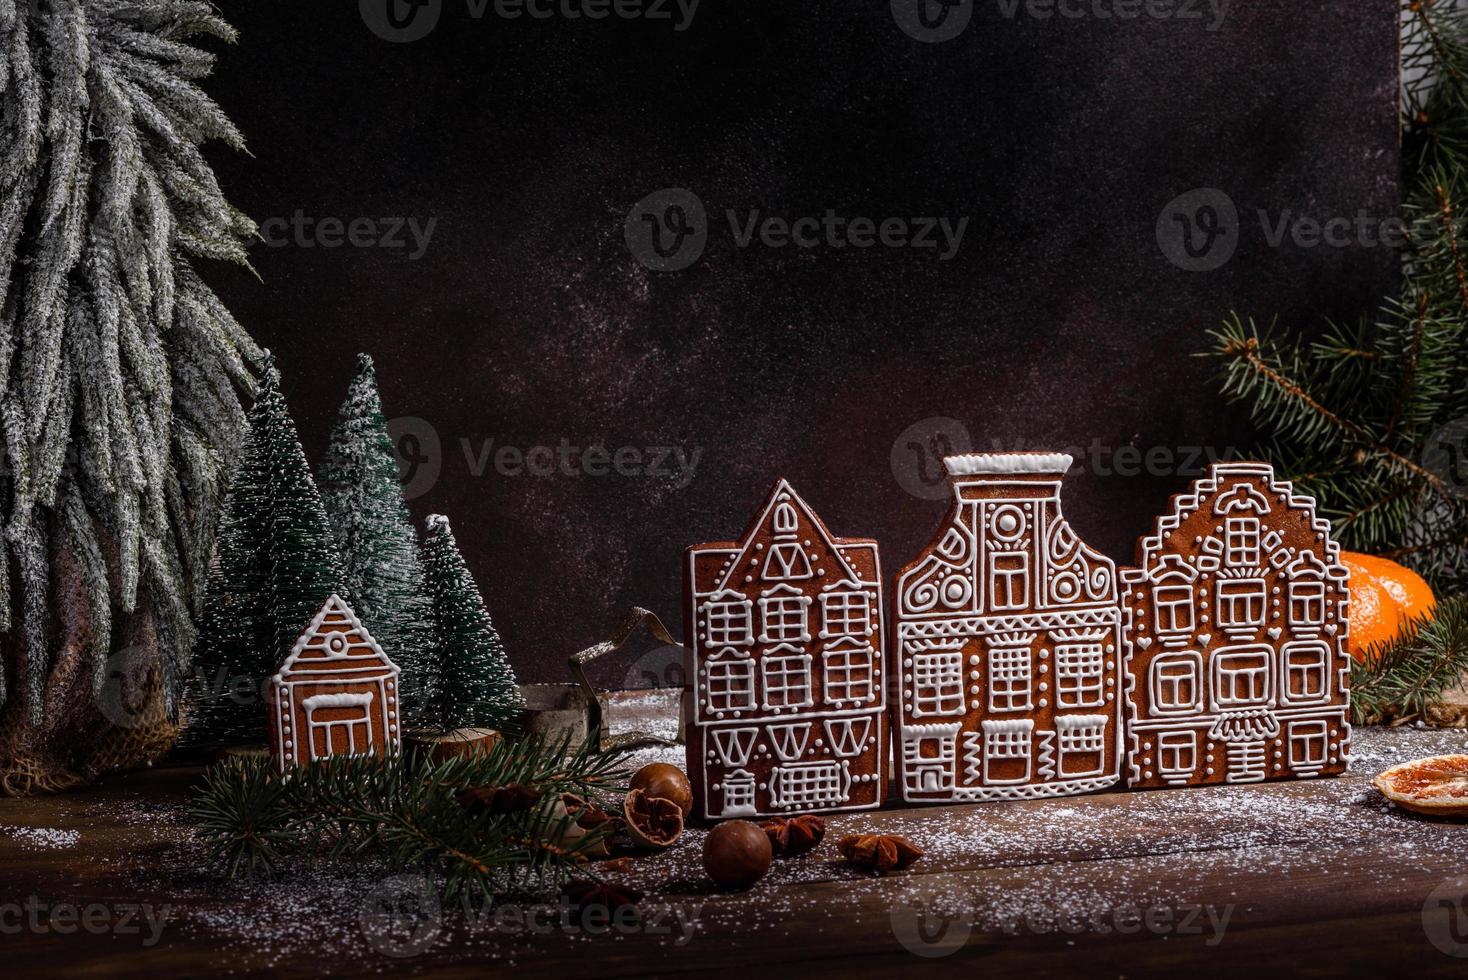 läckra vackra sötsaker på ett mörkt träbord på julafton foto